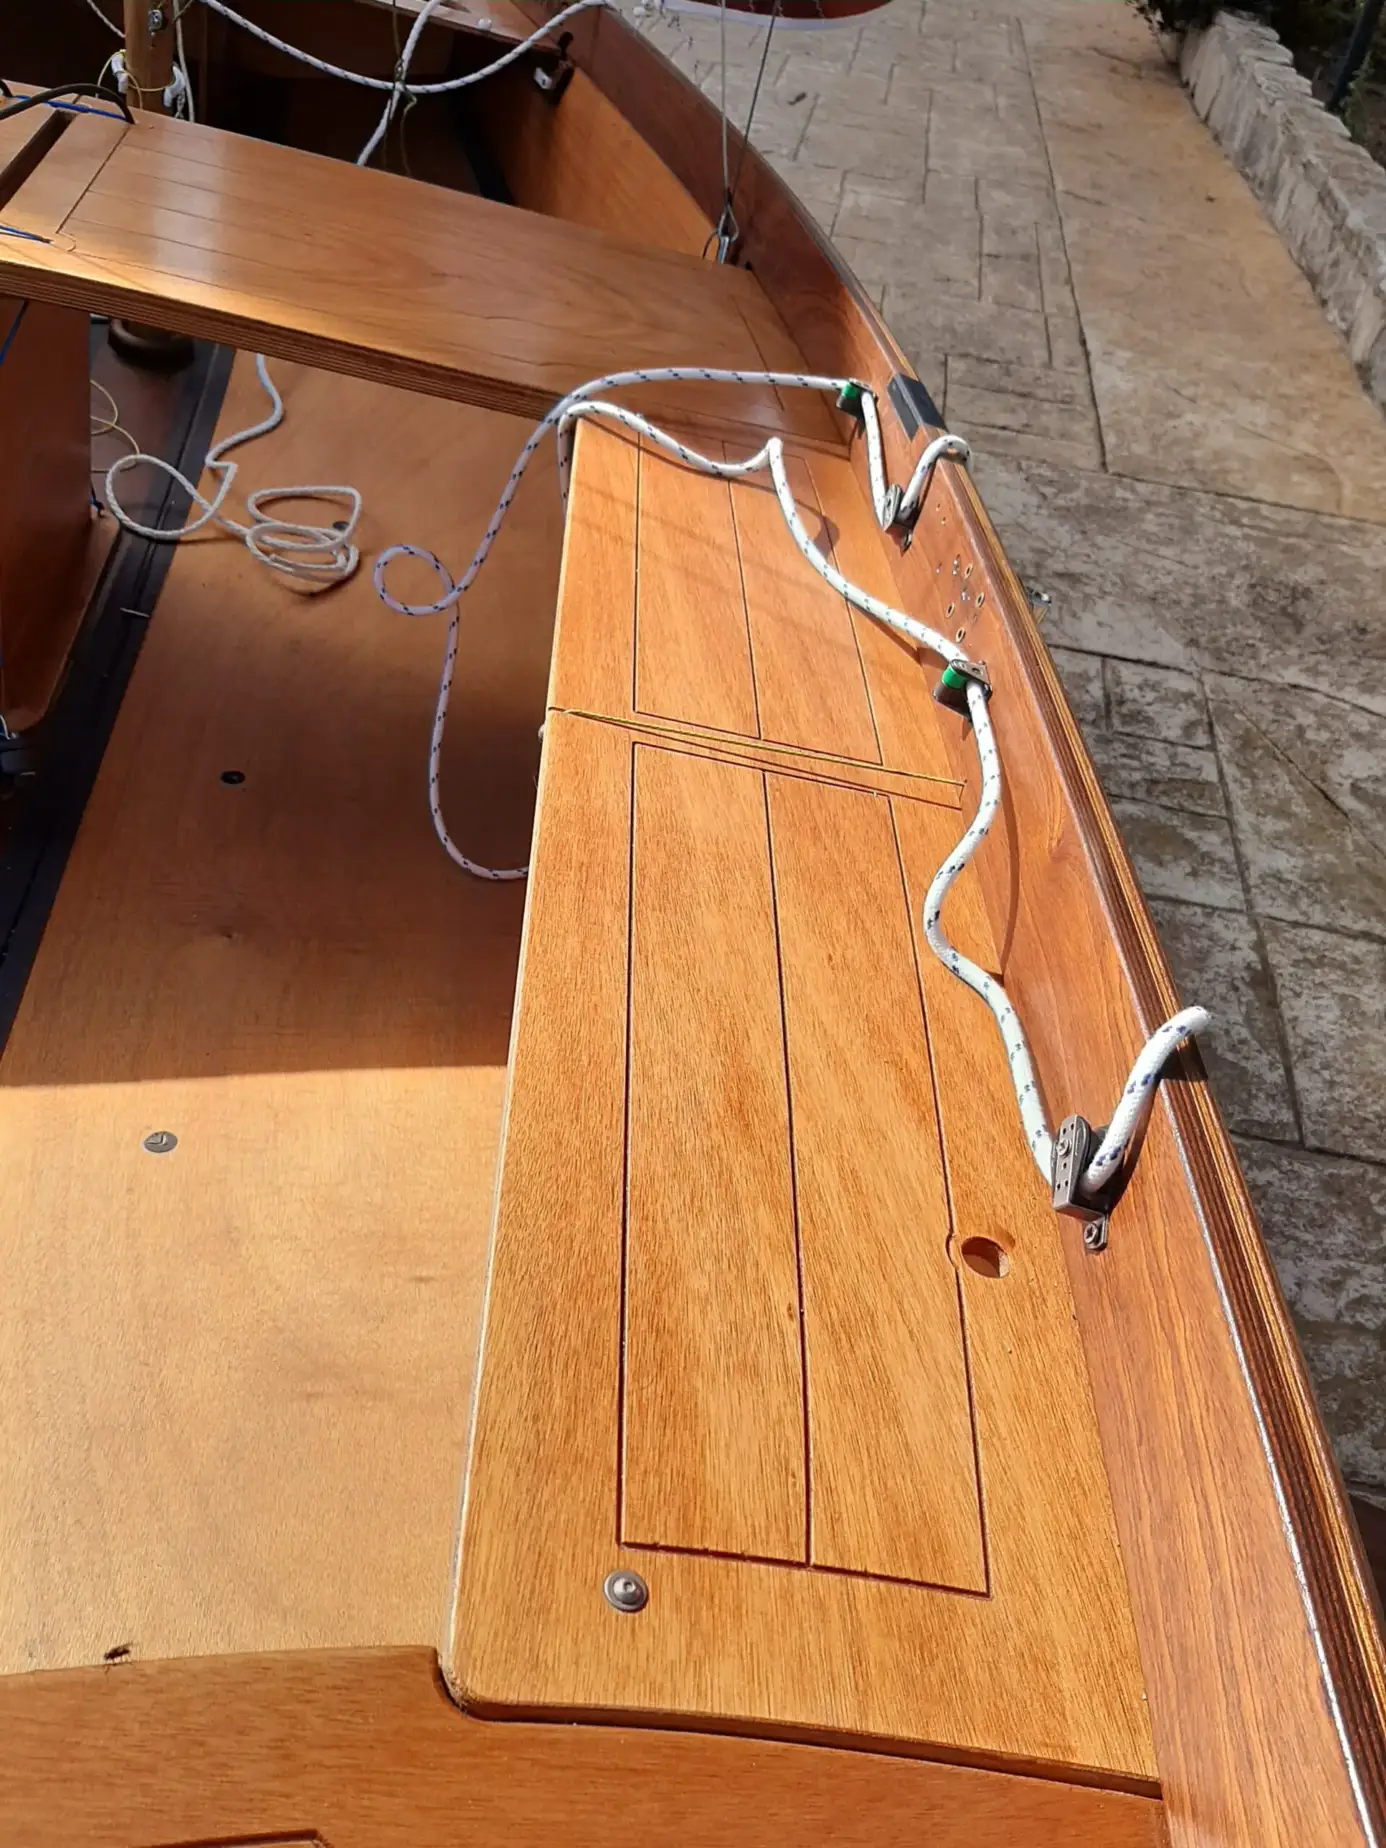 Panchette laterali della barca a vela P8 . Da apprezzare le pregevoli venature del legno.